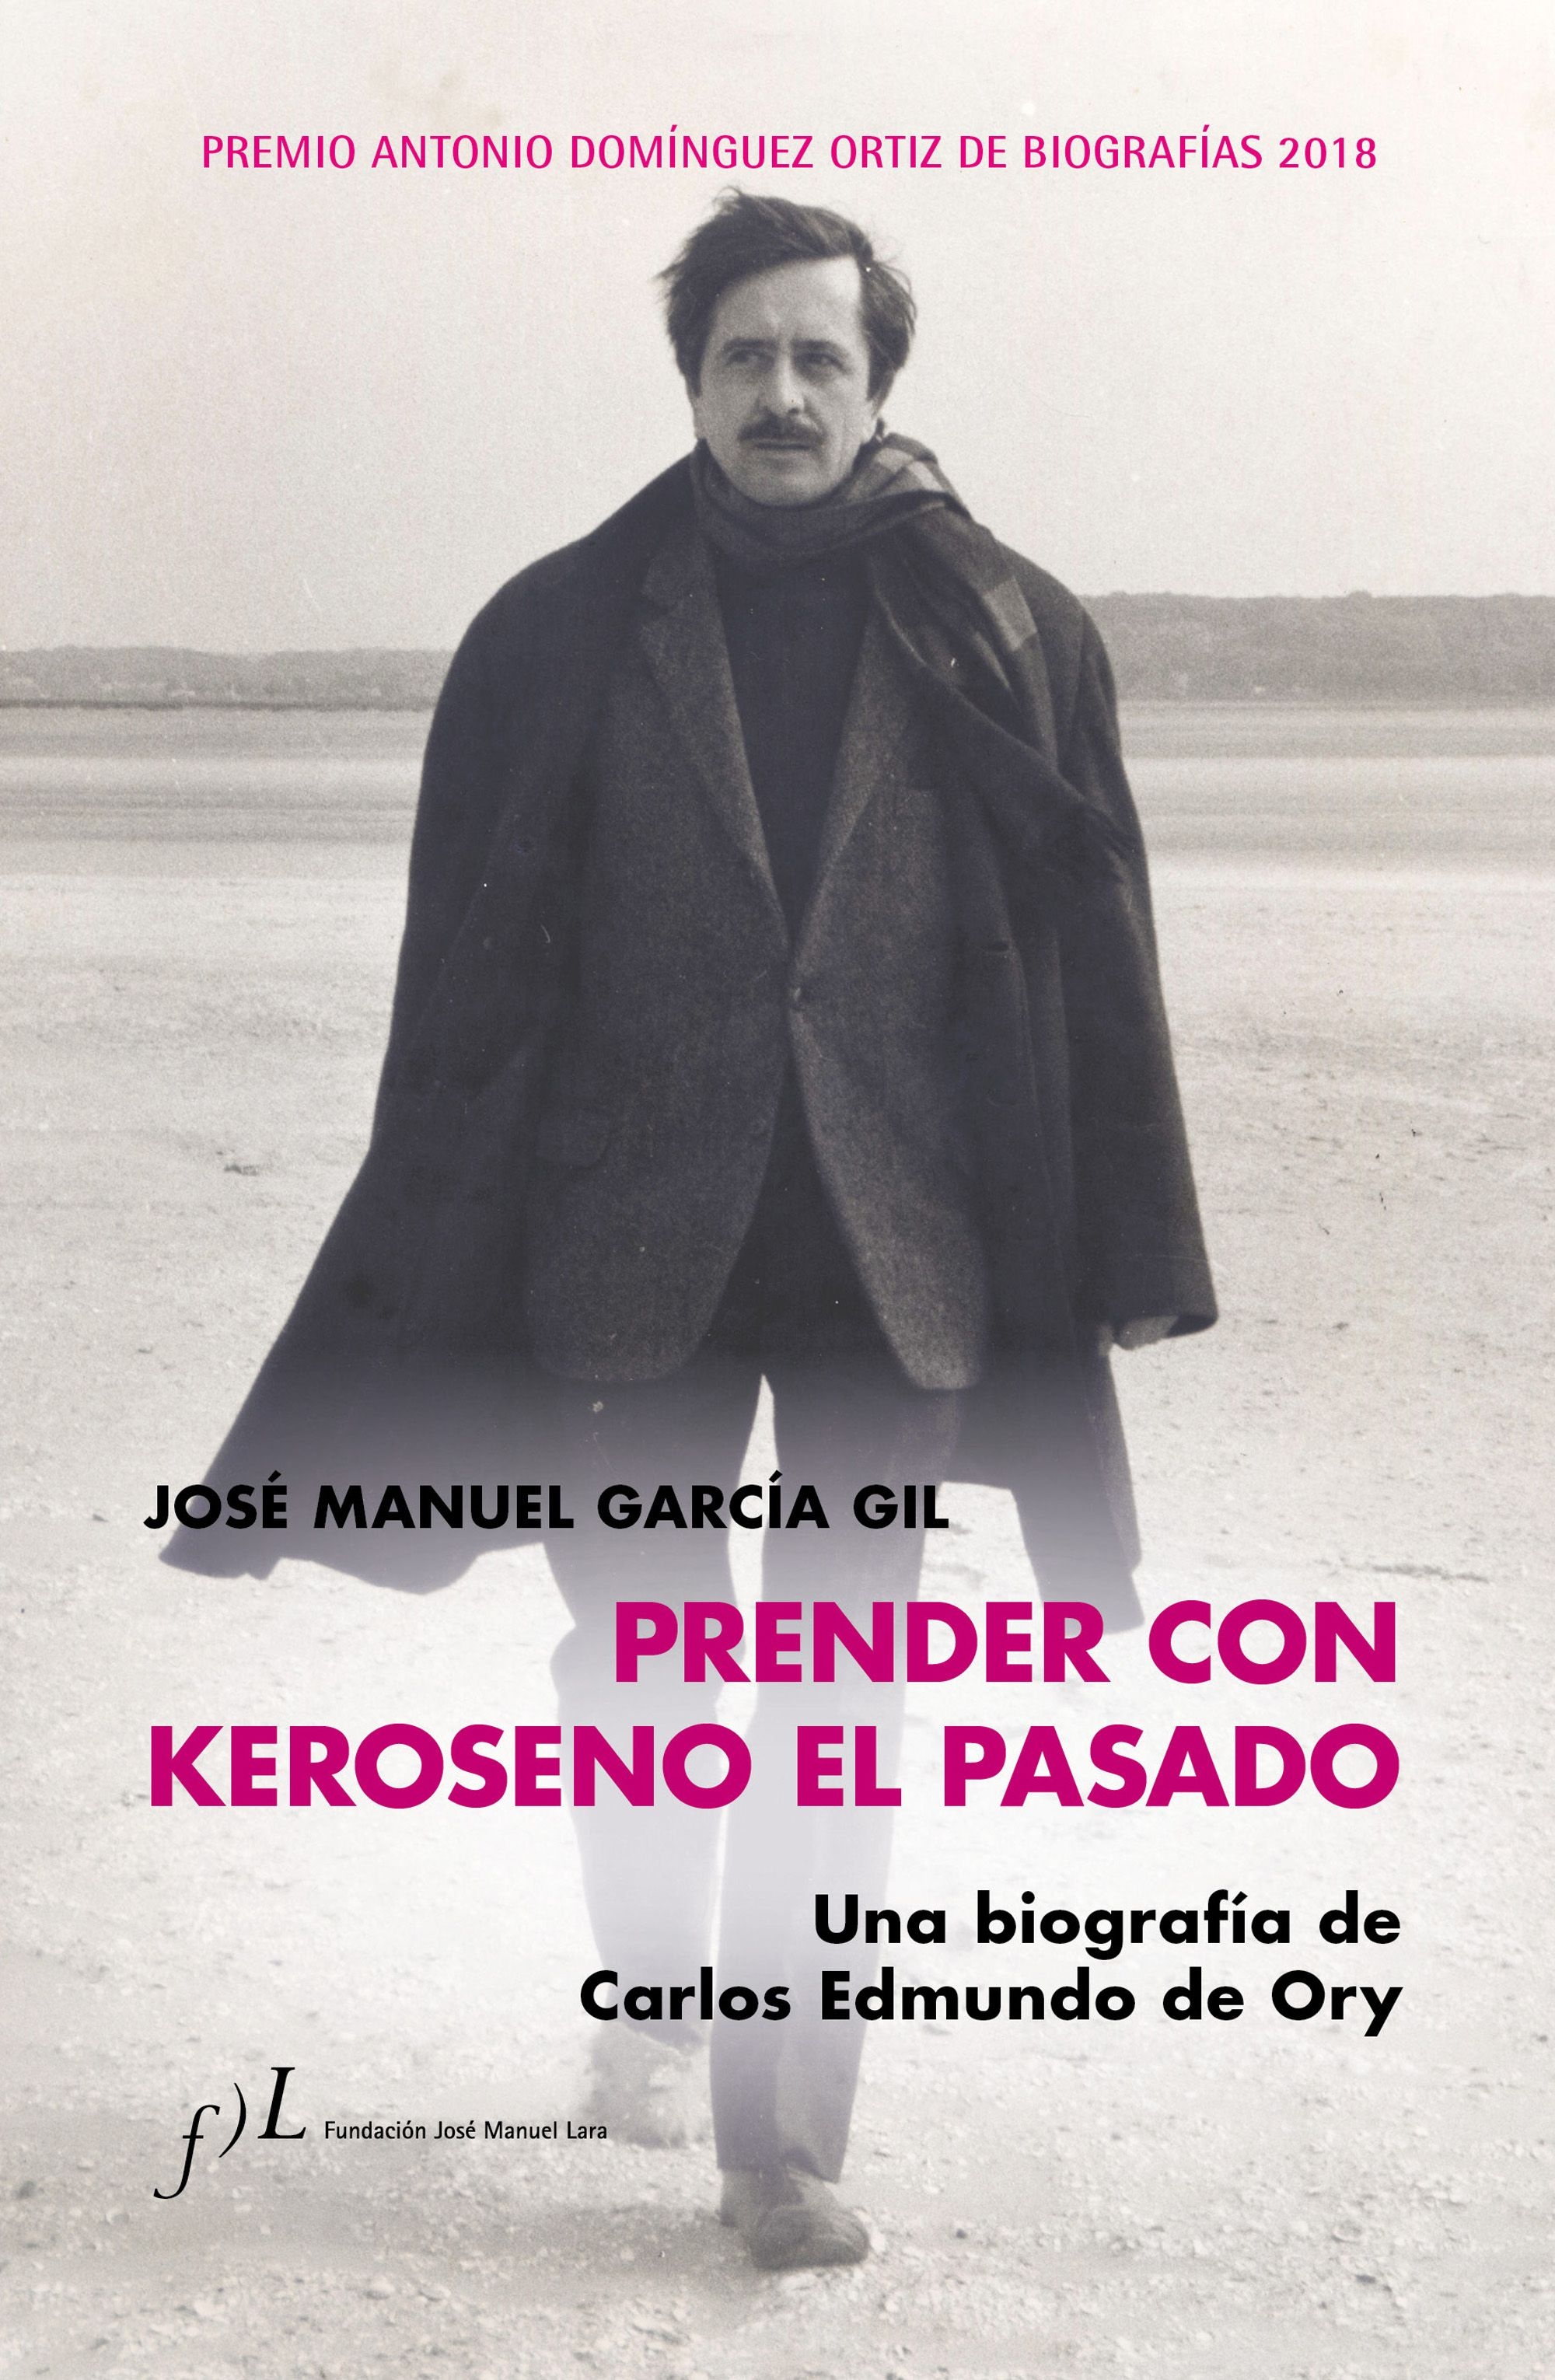 JOSÉ MANUEL GARCÍA GIL. Prender con keroseno el pasado. Una biografía de Carlos Edmundo de Ory (Fundación J.M. Lara)